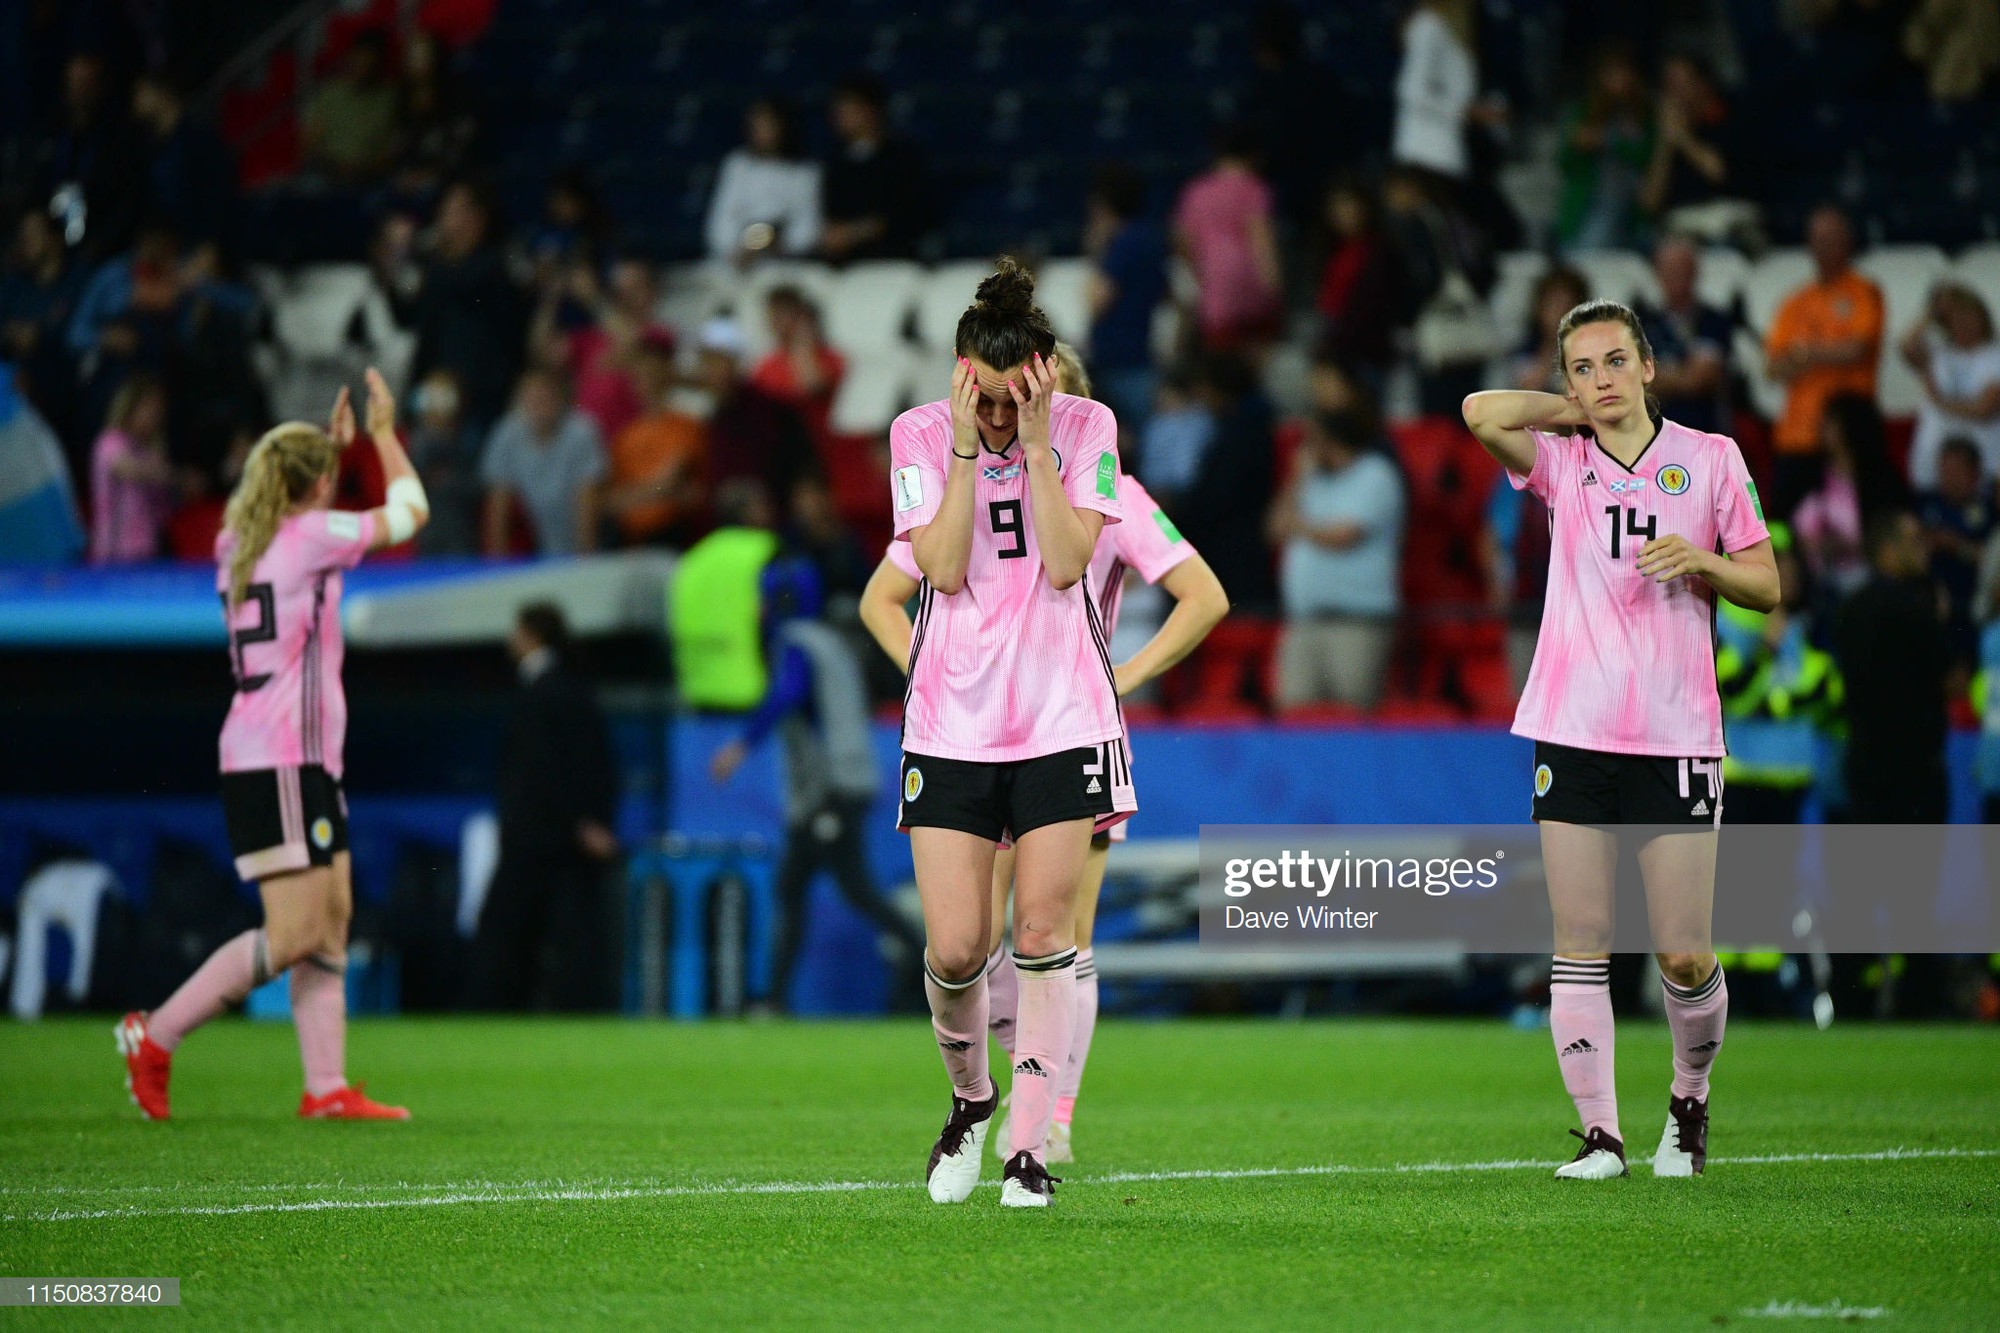 Dẫn trước 3 bàn nhưng bị gỡ hòa trong vỏn vẹn 20 phút, tuyển nữ Scotland bật khóc nức nở khi bị loại khỏi World Cup nữ 2019 - Ảnh 2.